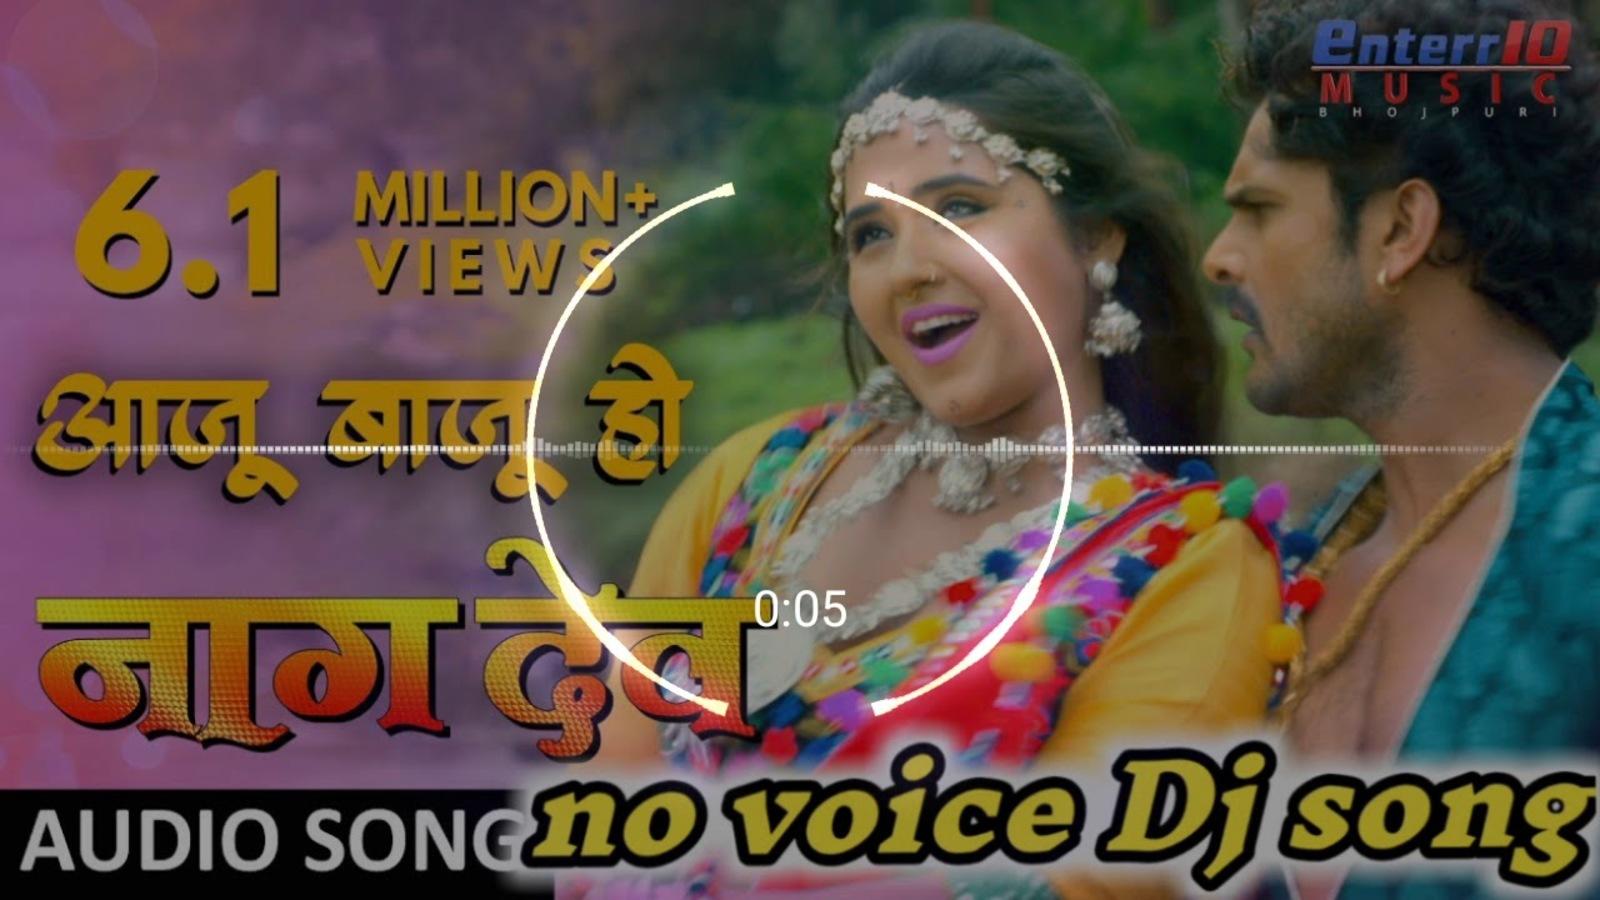 Aajoo Bajoo Ho Dj Remix Bhojpuri Song Khesari Lal Yadav Kajal Raghwani Bhojpuri Gana Aajoo Bajoo Hodj Song Remix Mp3 2020 à¤« à¤² à¤¸ à¤ à¤¡ à¤ªà¤° à¤ à¤® à¤ à¤¸ à¤° à¤ à¤à¤² à¤ Dj Bhojpuri Song à¤à¤ भोजपुरी फ़िल्मों में हुस्न और दिलकश अदाओं का जलवा बिखेरने वाली मोनालिसा सोशल मीडिया पर भी छाई रहती है. à¤« à¤² à¤¸ à¤ à¤¡ à¤ªà¤° à¤ à¤® à¤ à¤¸ à¤° à¤ à¤à¤² à¤ dj bhojpuri song à¤à¤ à¤¬ à¤ à¤¹ à¤ªà¤°